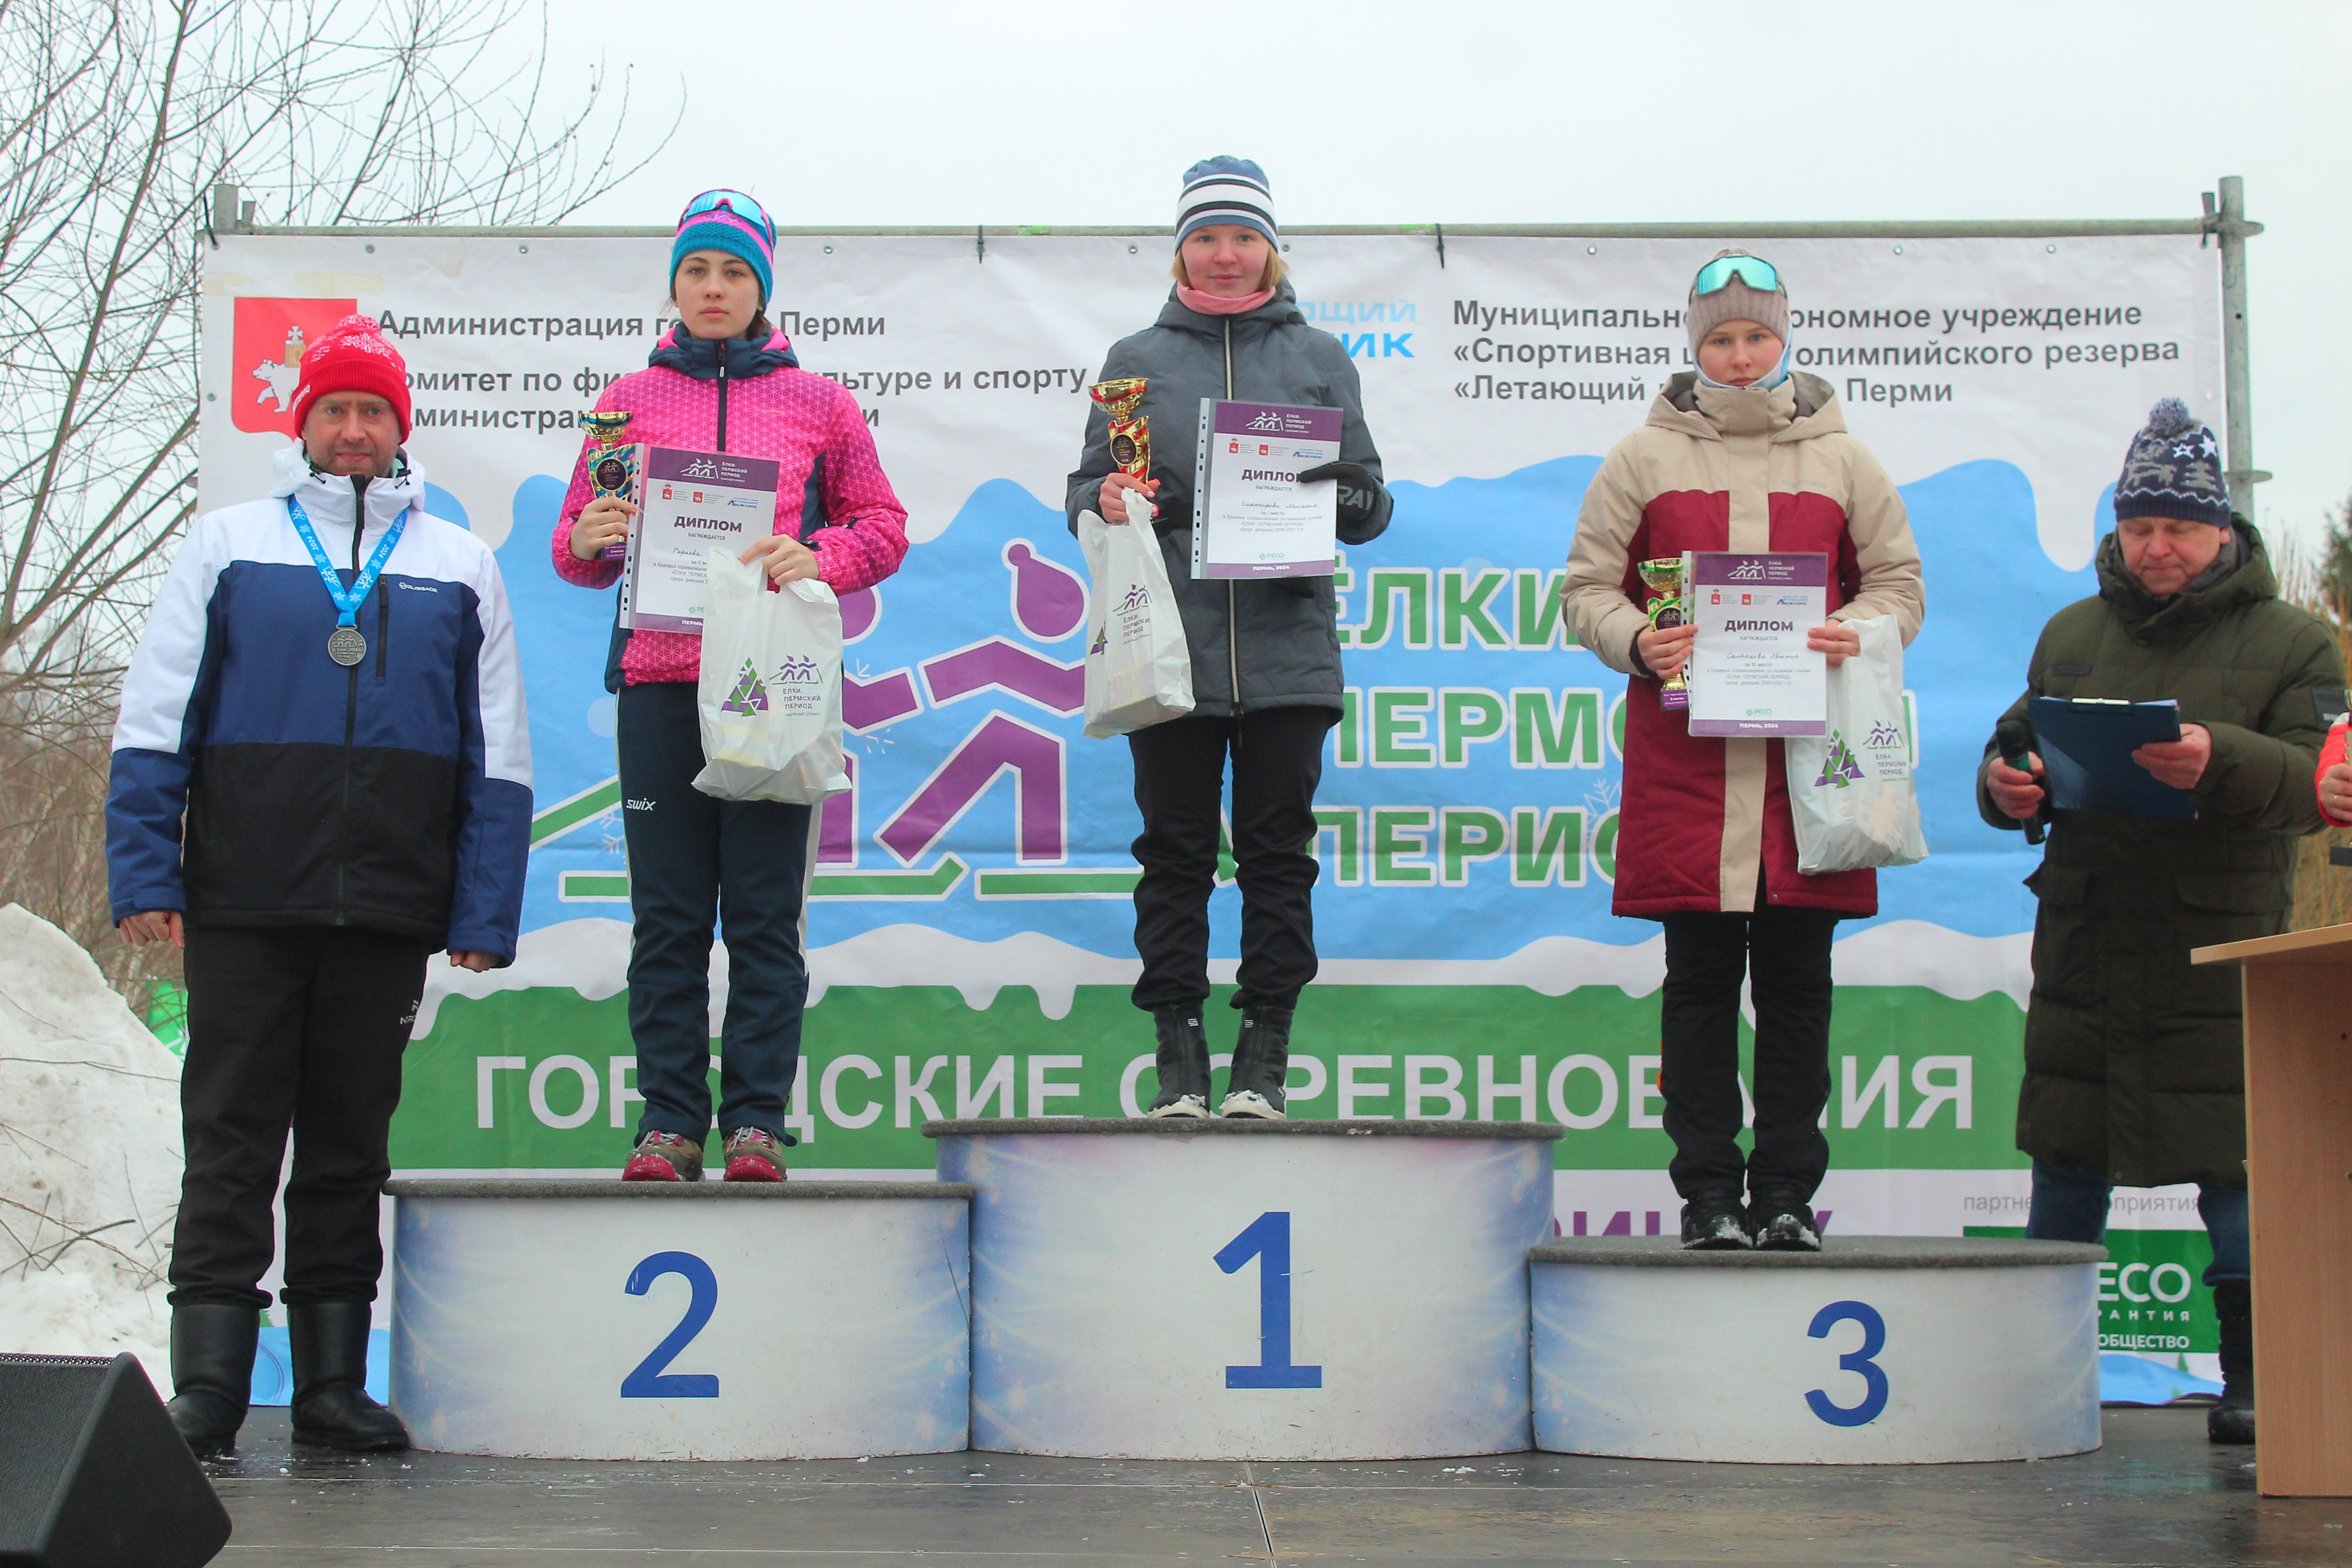 3 марта в  саду им 250 летия Перми завершились  традиционные лыжные гонки Елки Пермский период